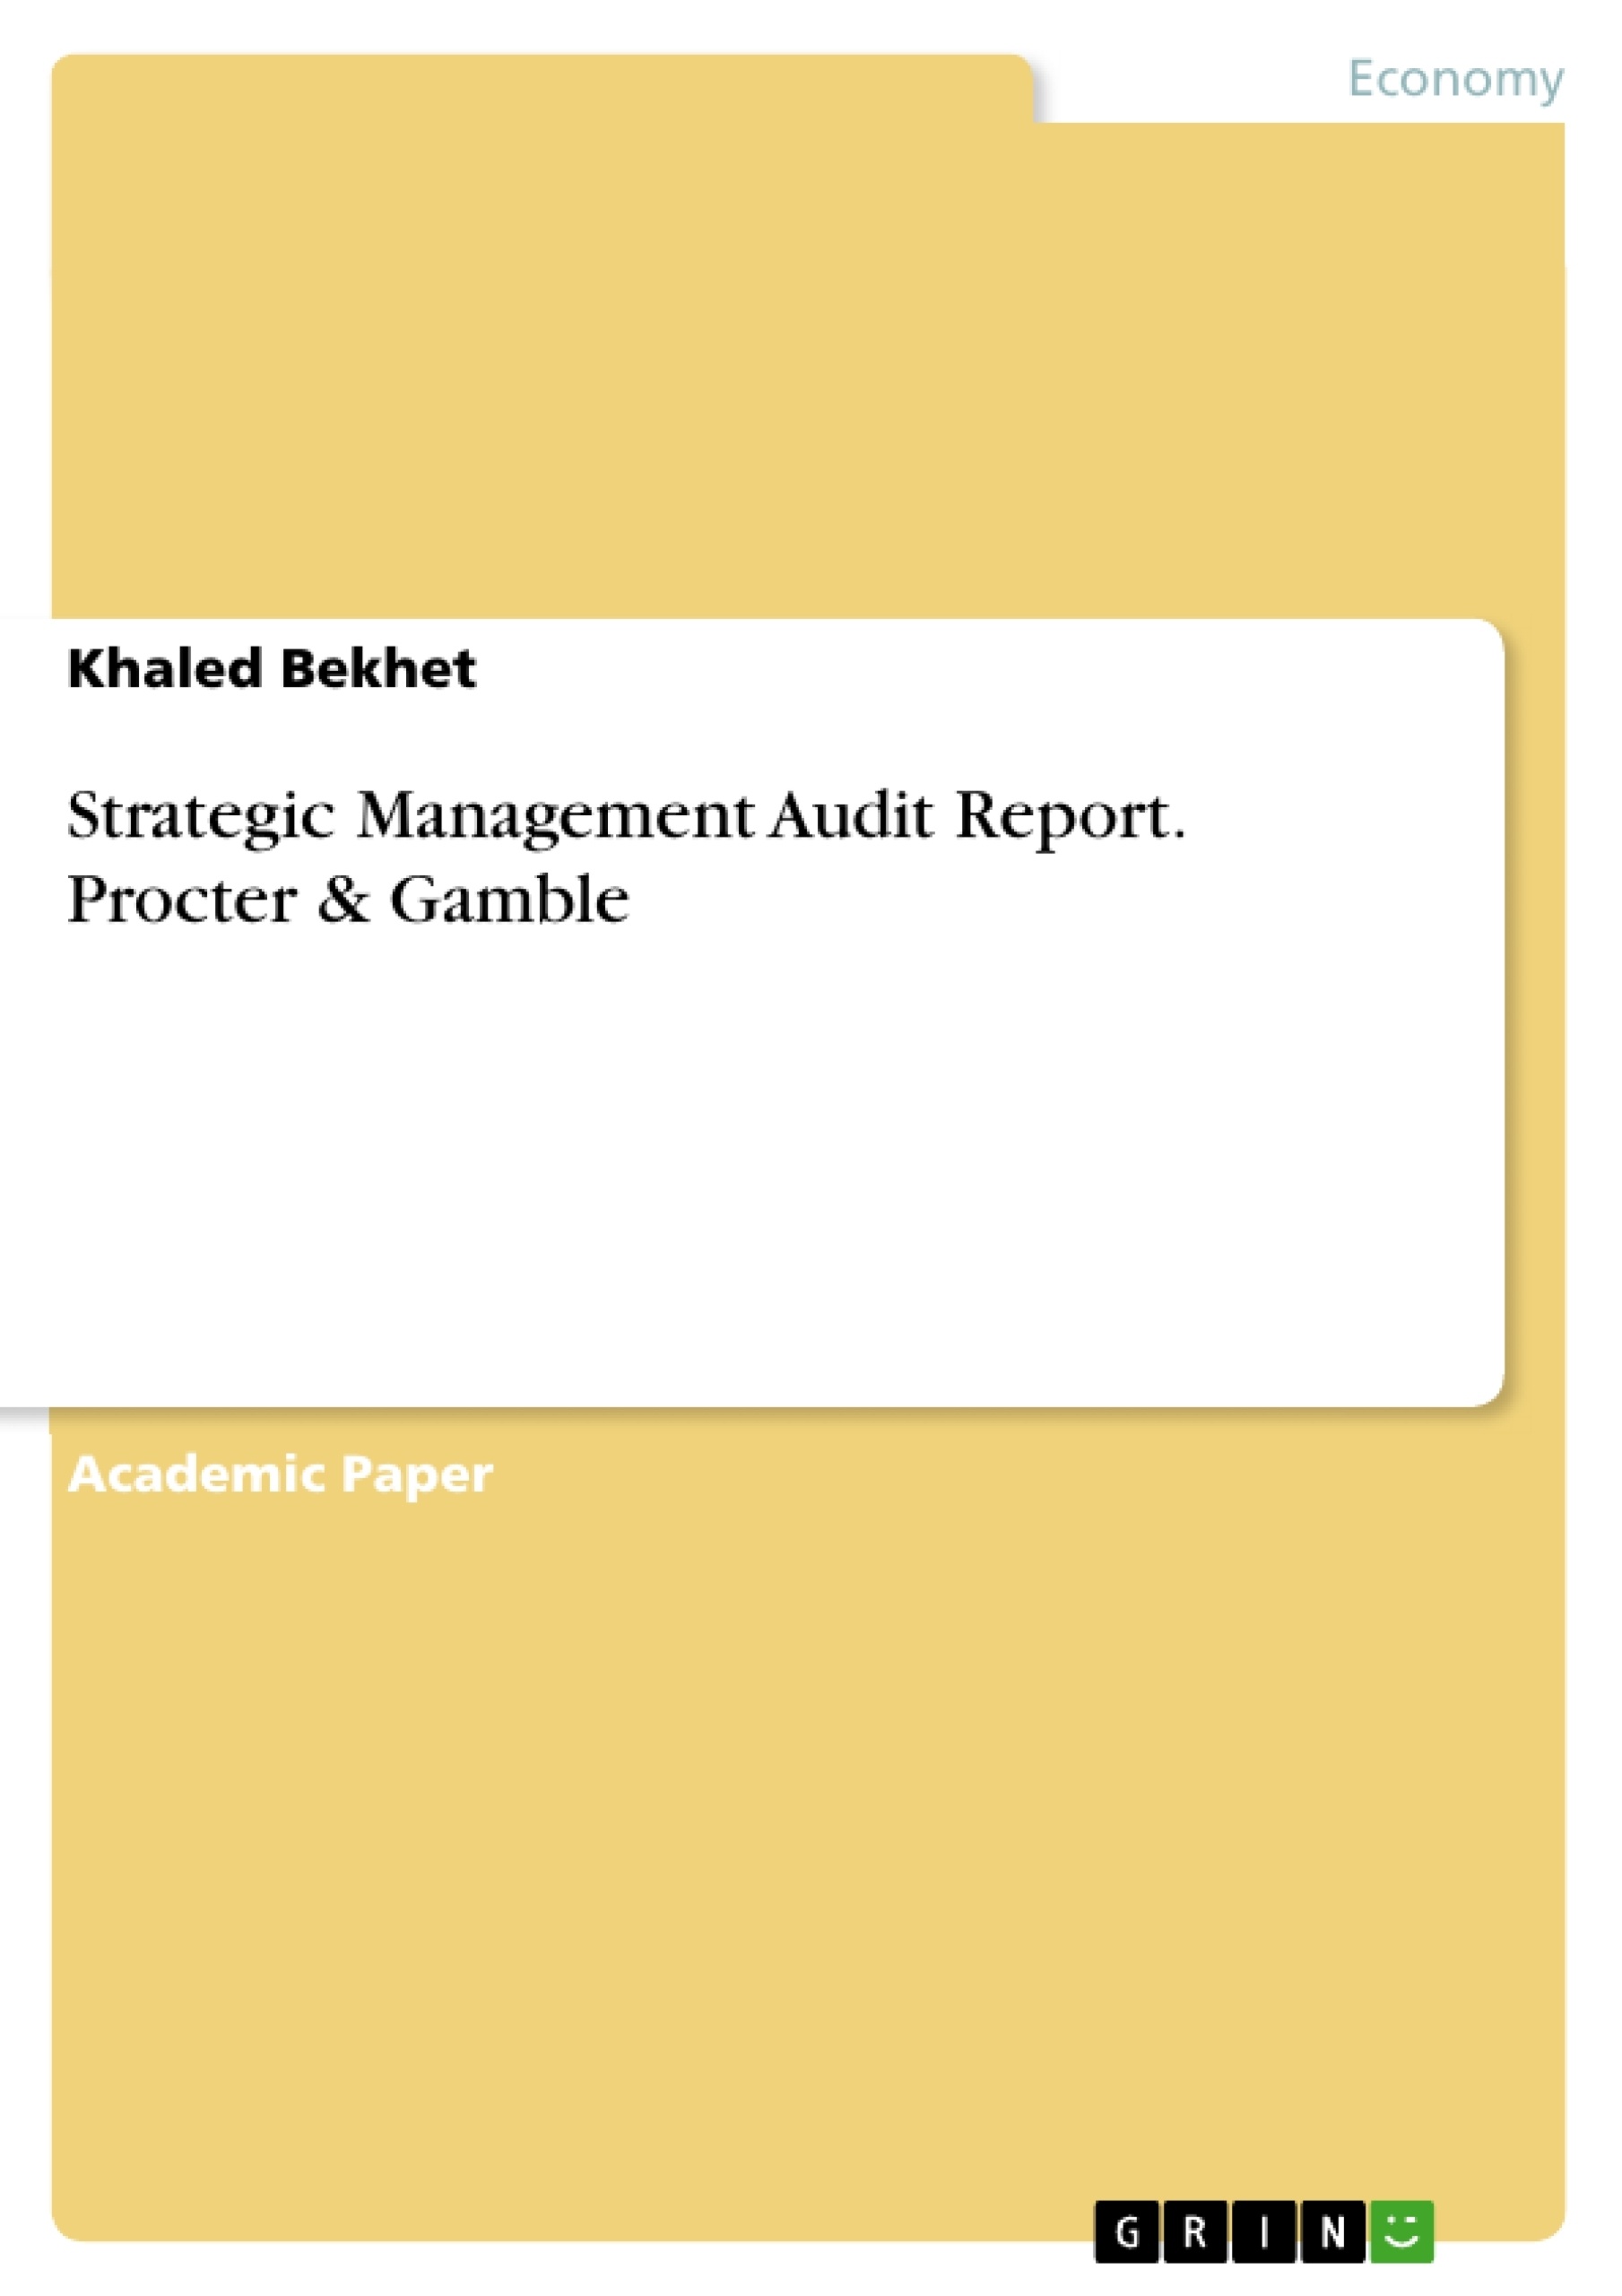 Title: Strategic Management Audit Report. Procter & Gamble